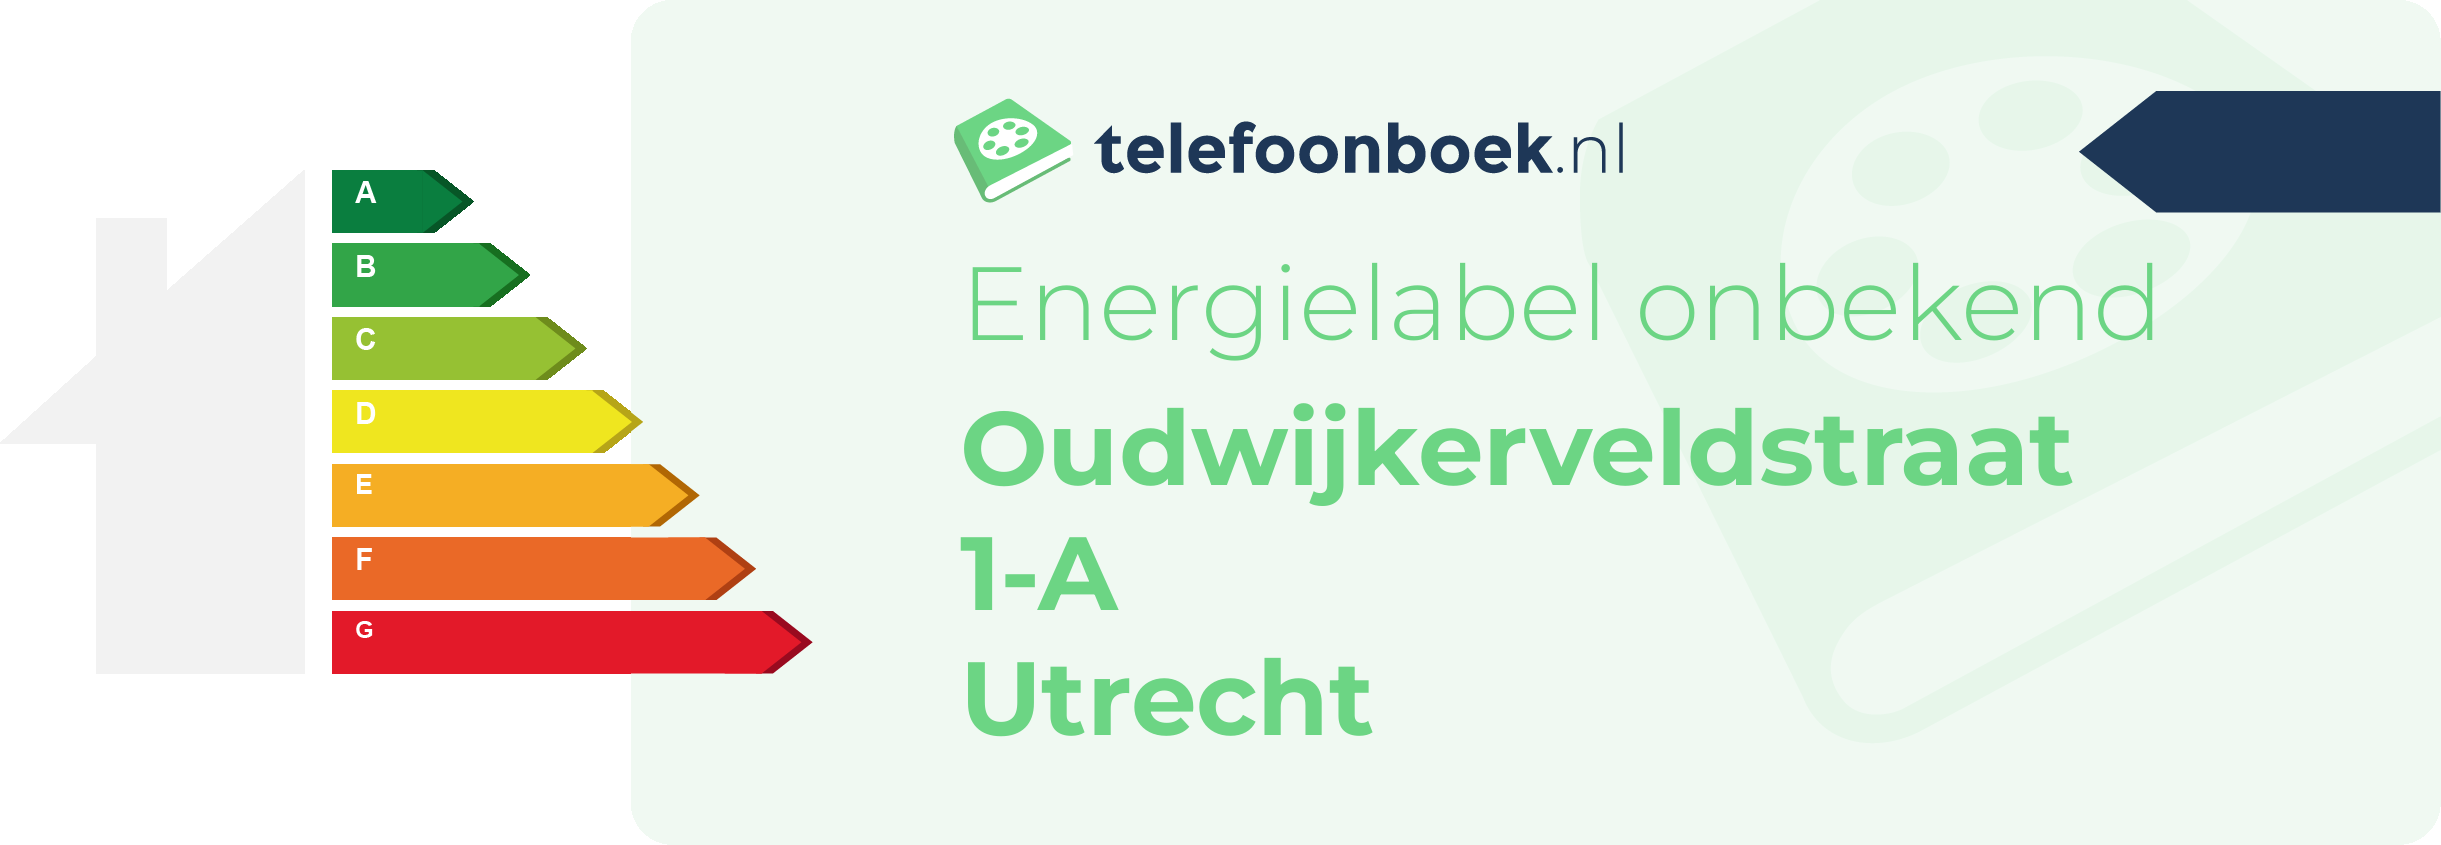 Energielabel Oudwijkerveldstraat 1-A Utrecht